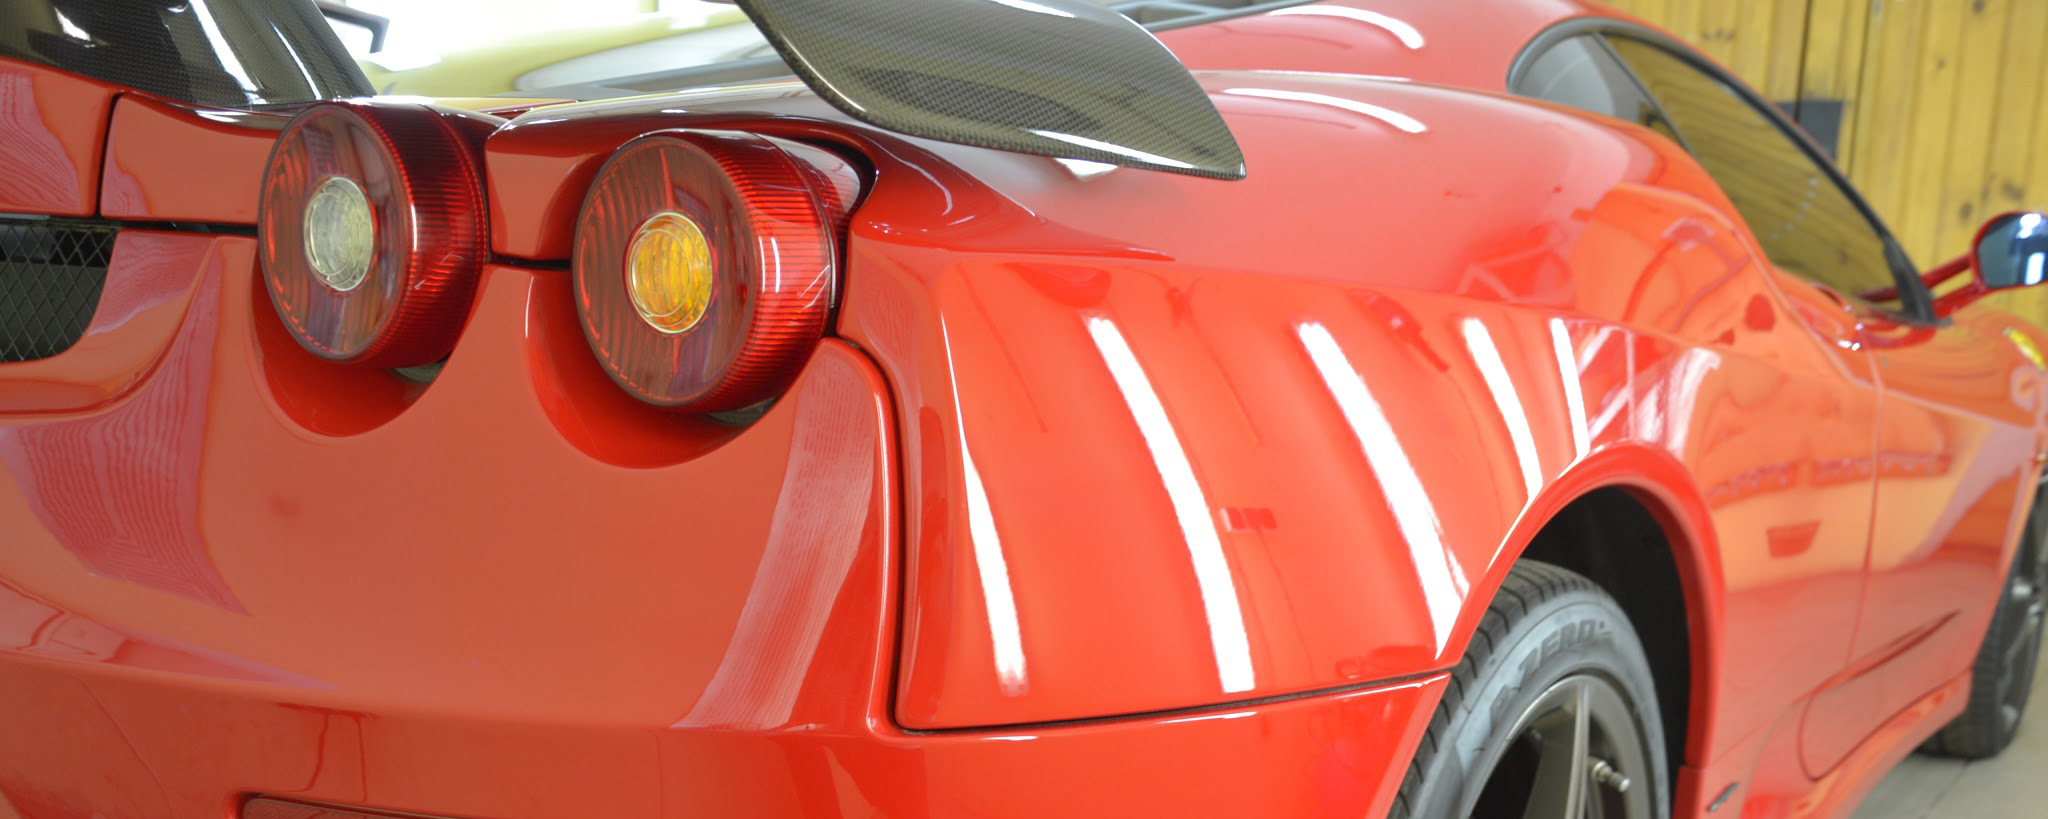 Ferrari F430. Полировка кузова и салона. Покраска кожи, установка защитной пленки и нанокерамика Ceramic Pro 9H.